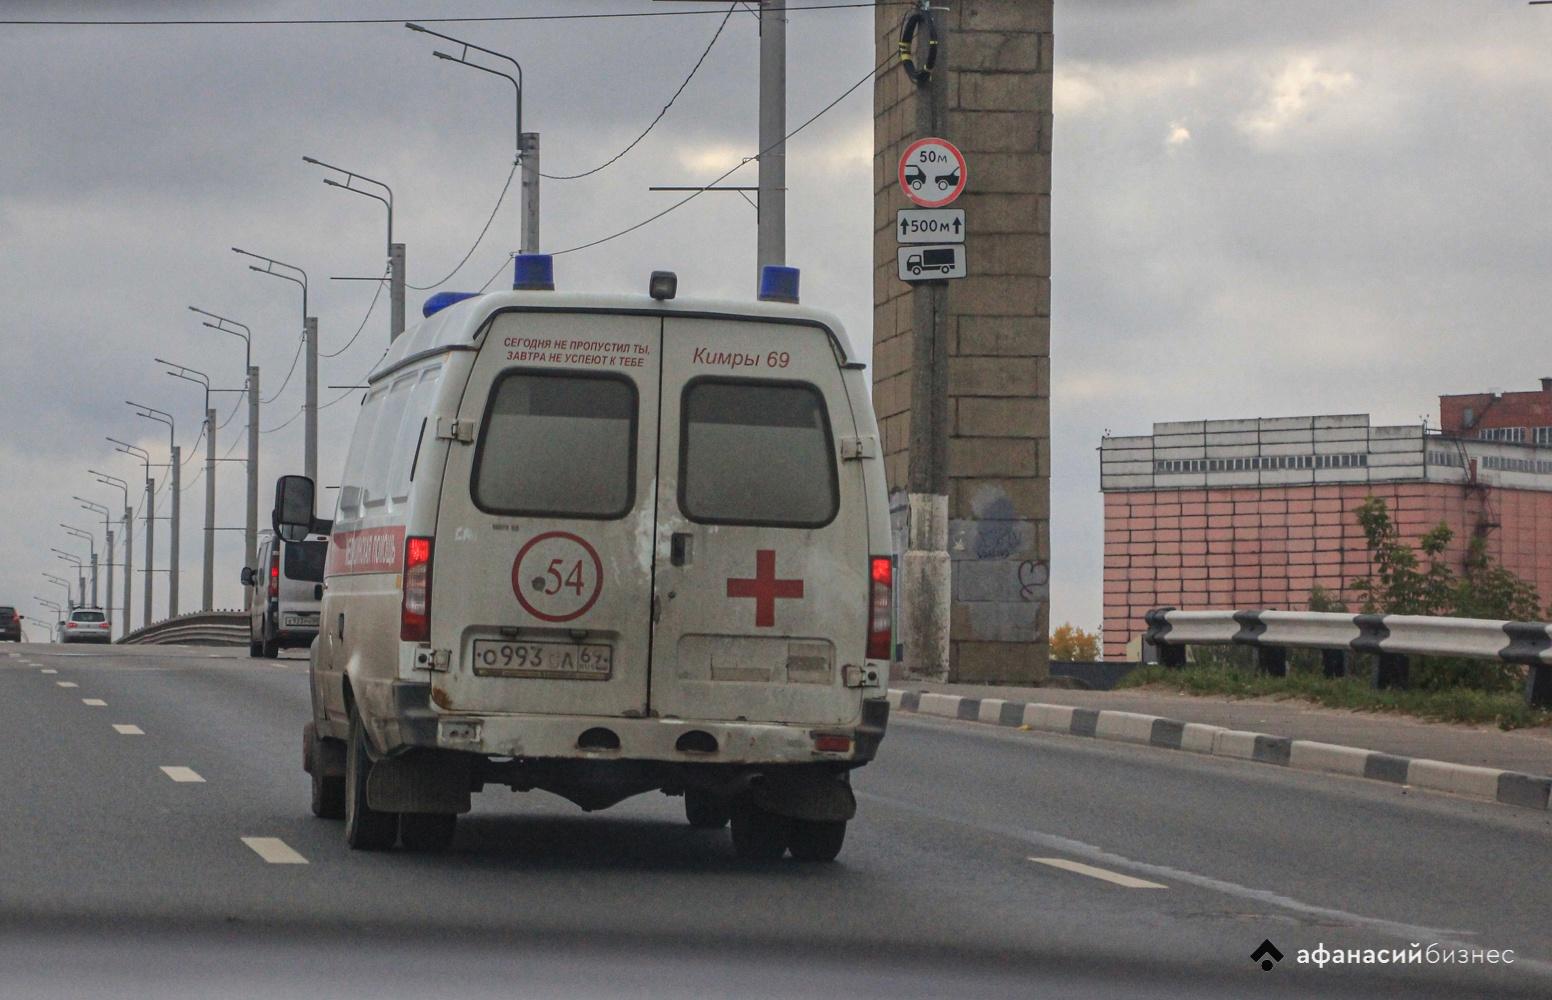 В Твери пациент выбил окно в машине скорой помощи  - новости Афанасий